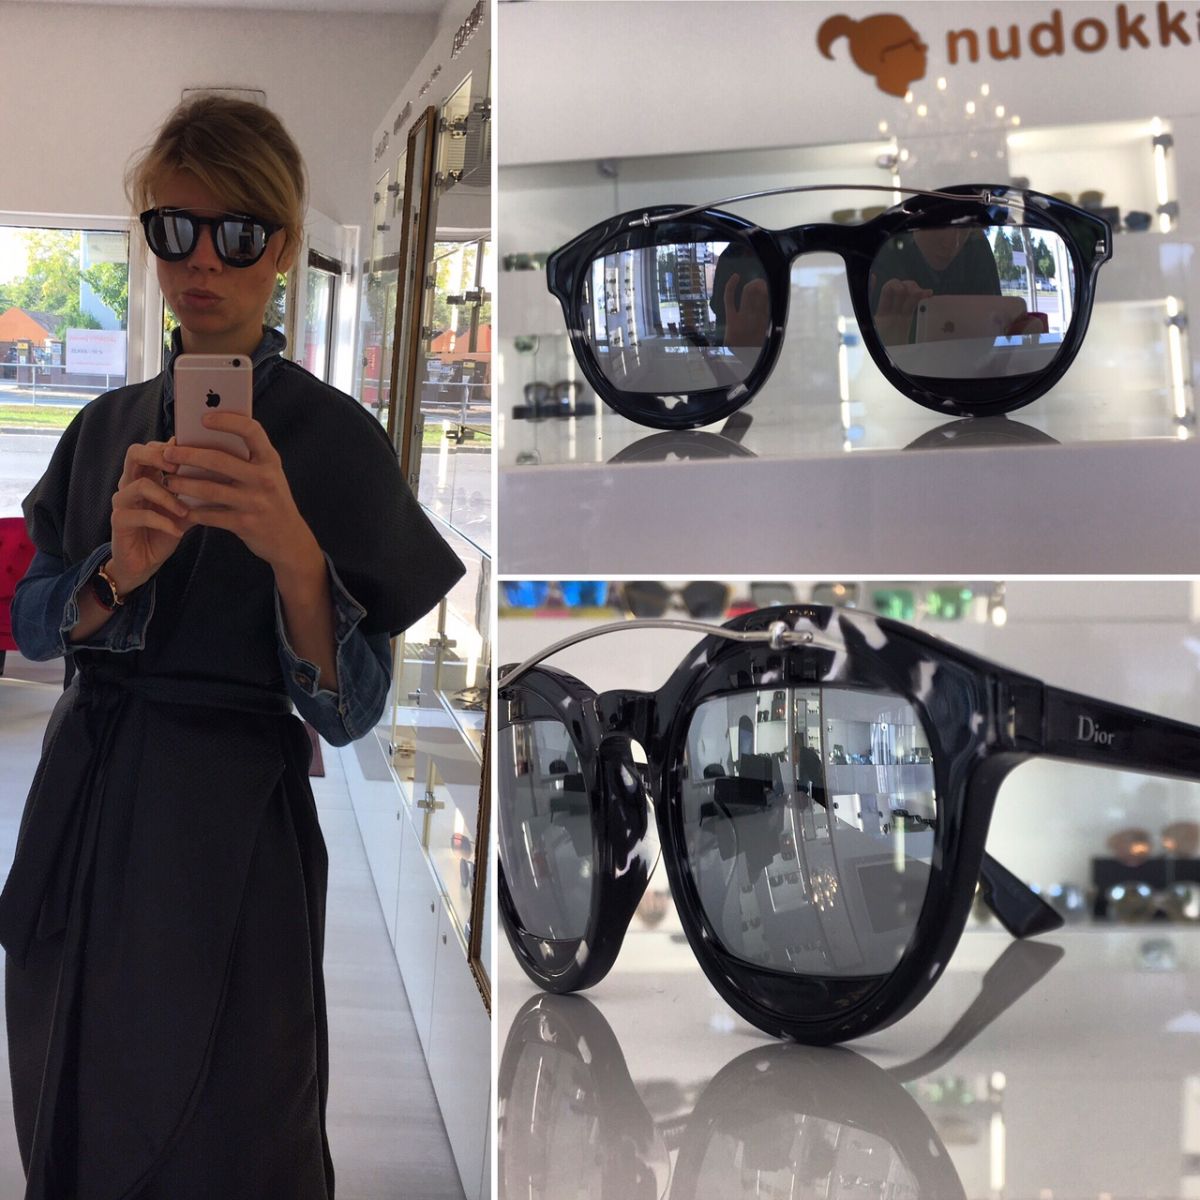 optika Nudokki - značkové okulire Dior